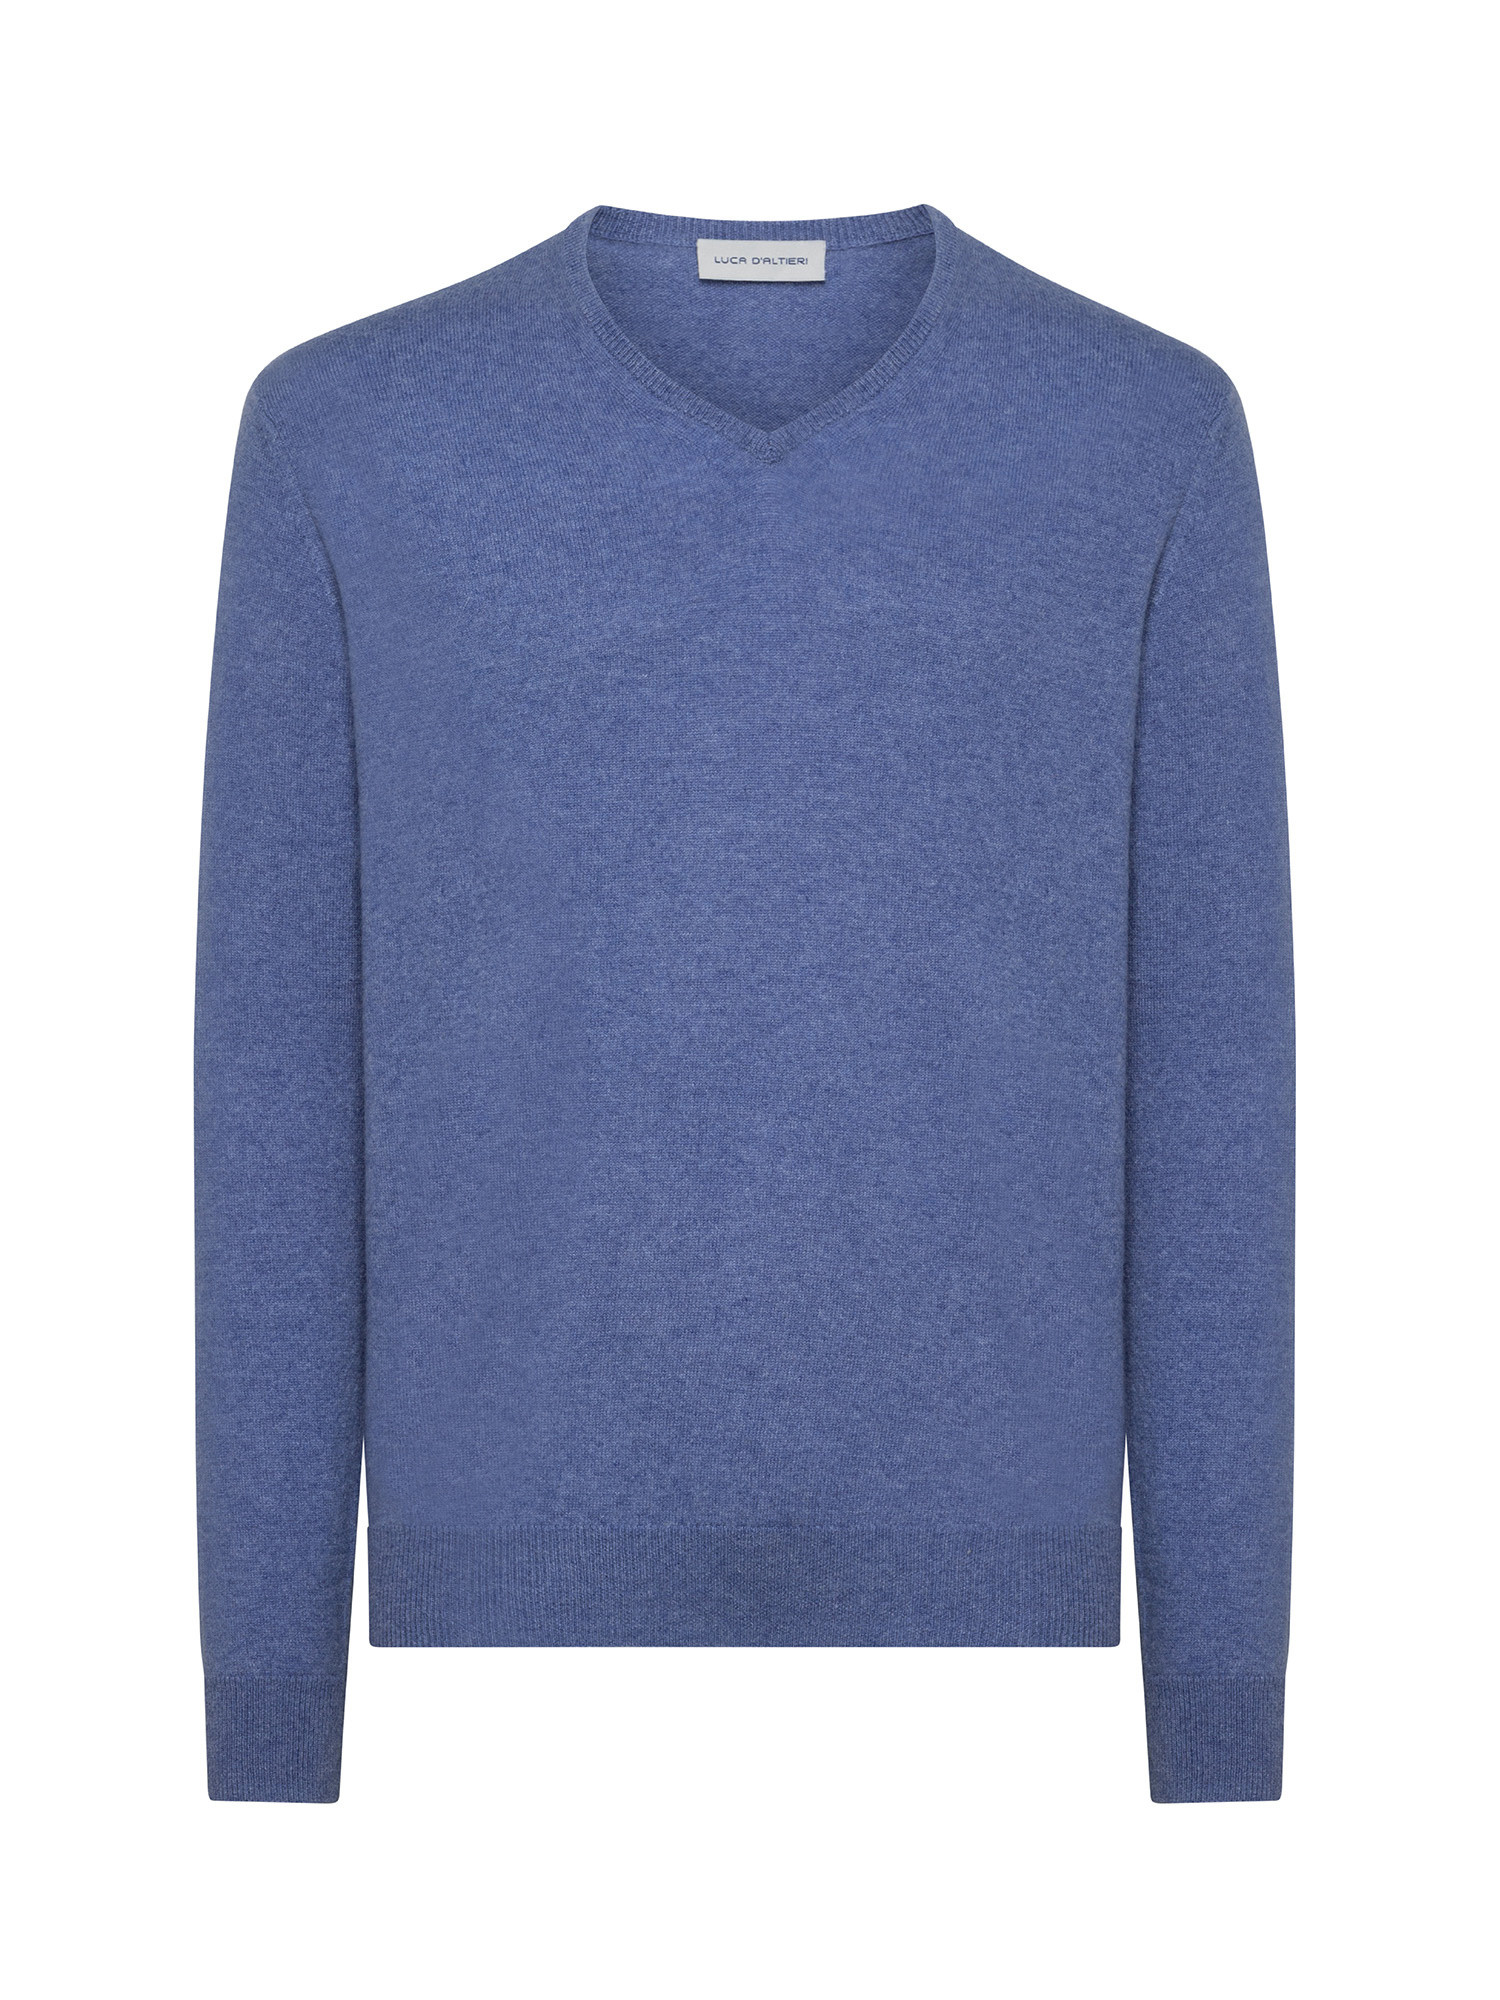 Пуловер с V-образным вырезом из чистого кашемира Luca D'Altieri, бледно-голубой пуловер с v образным вырезом из пушистого трикотажа xs бежевый